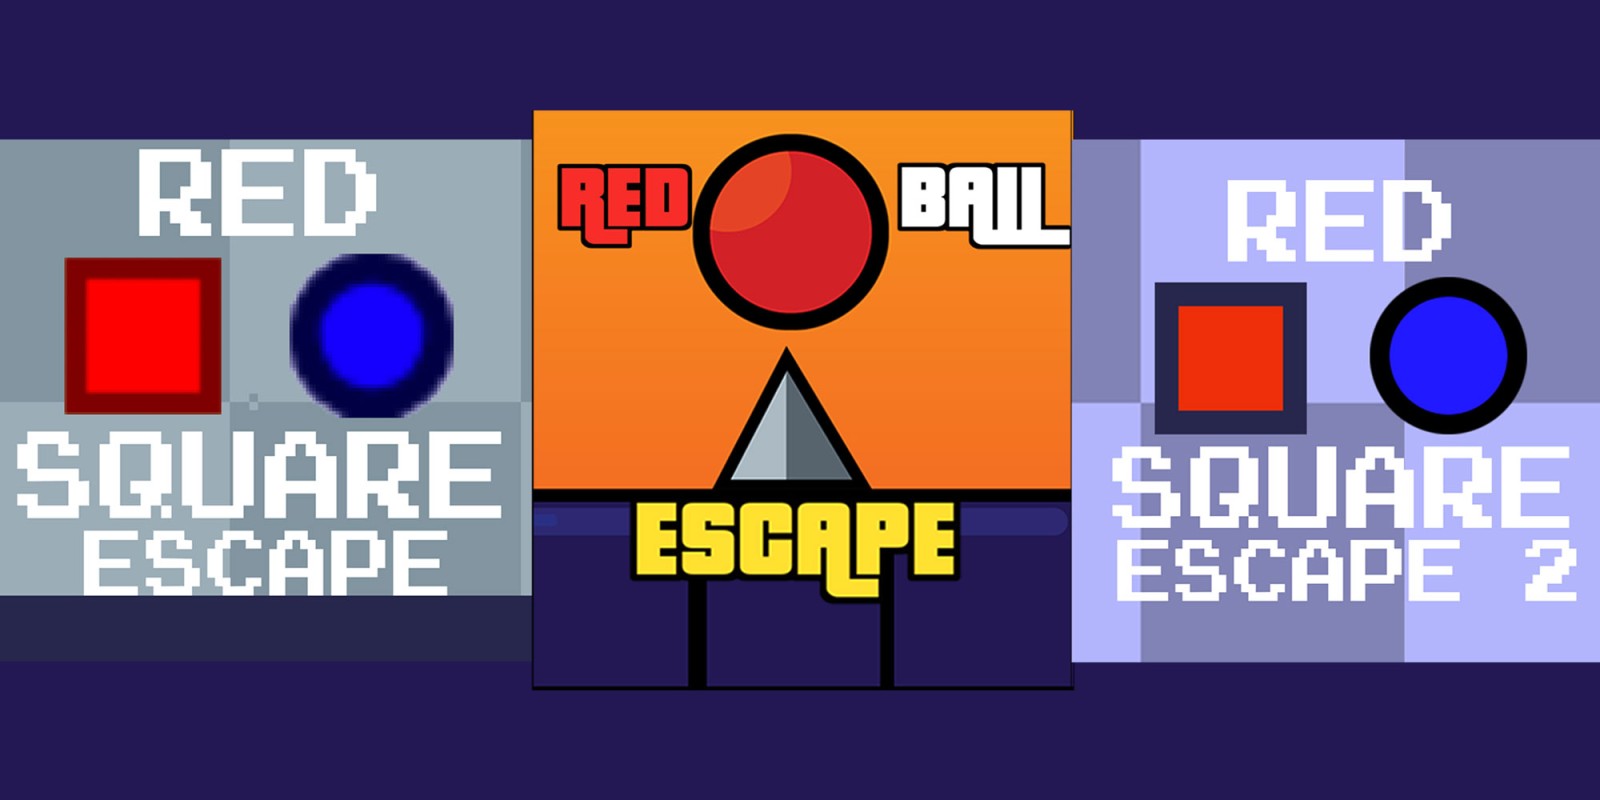 Red Escape Bundle